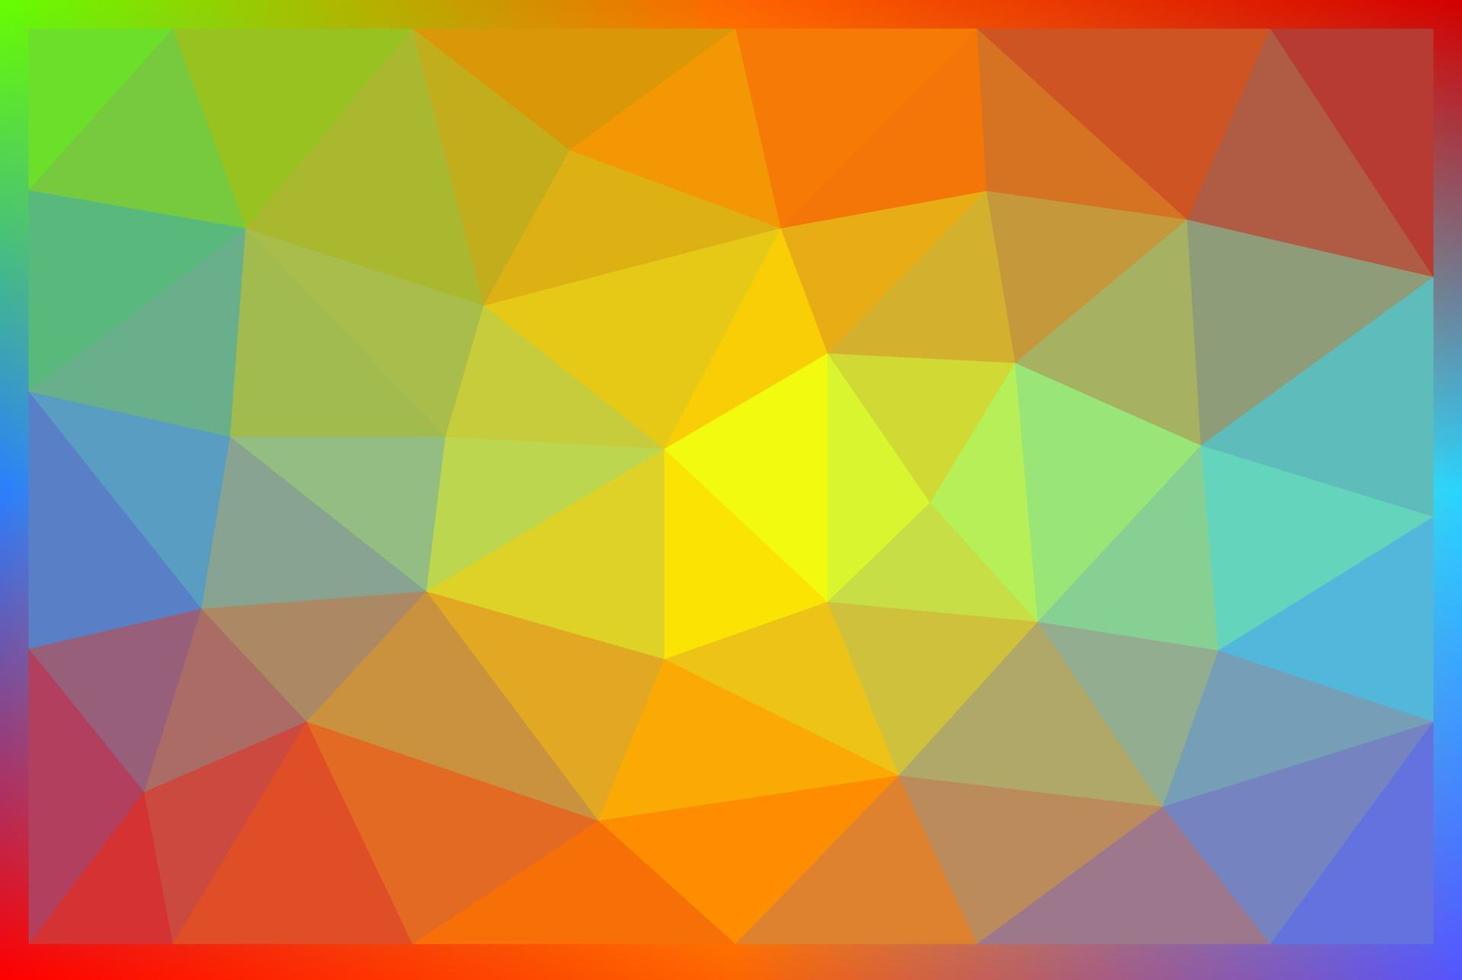 el fondo de malla dominante es el color del arco iris. fondo de malla con triángulos de colores. vector